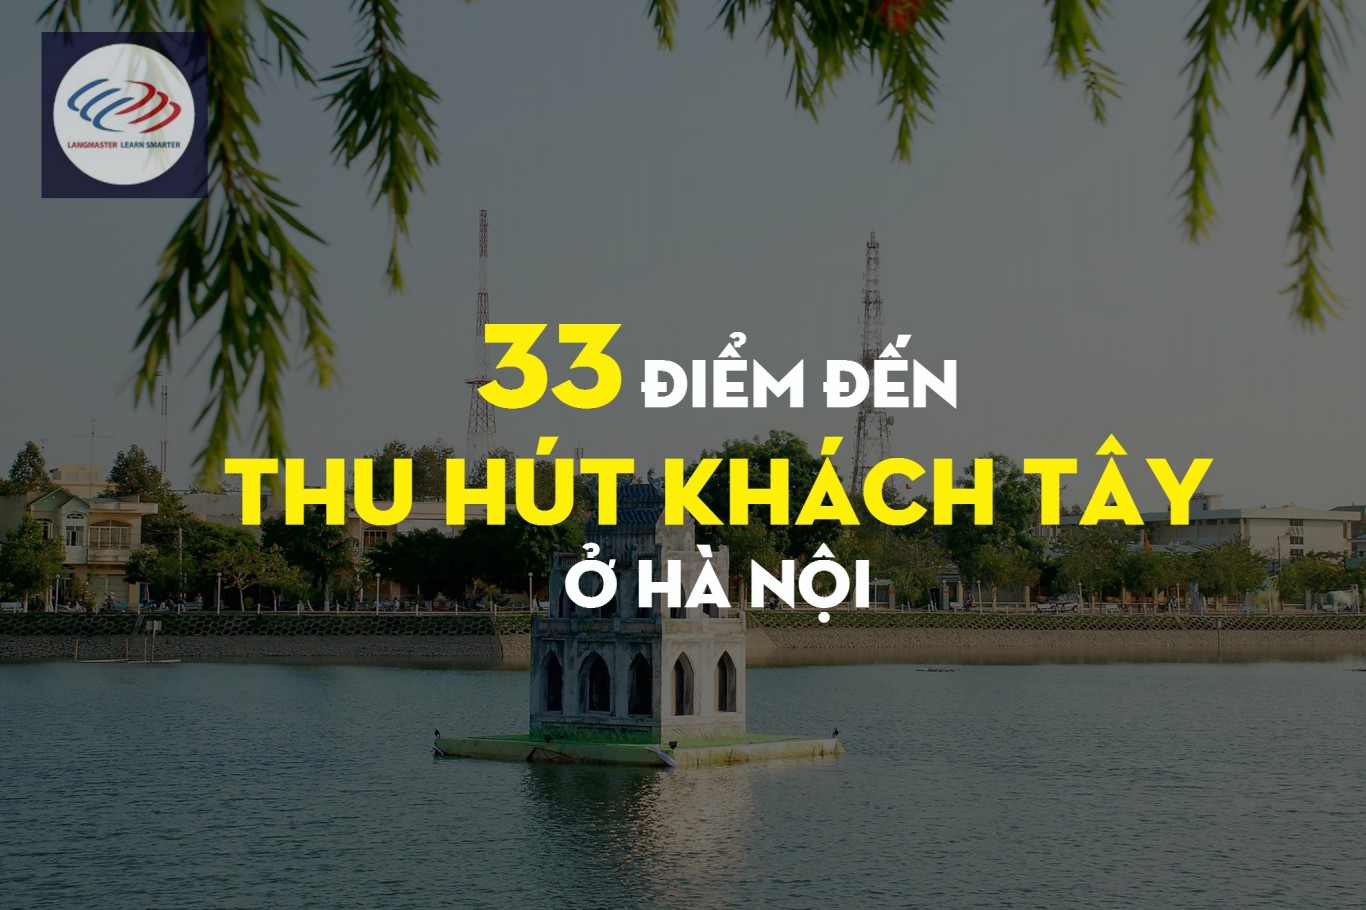 33 điểm đến thu hút khách Tây ở Hà Nội